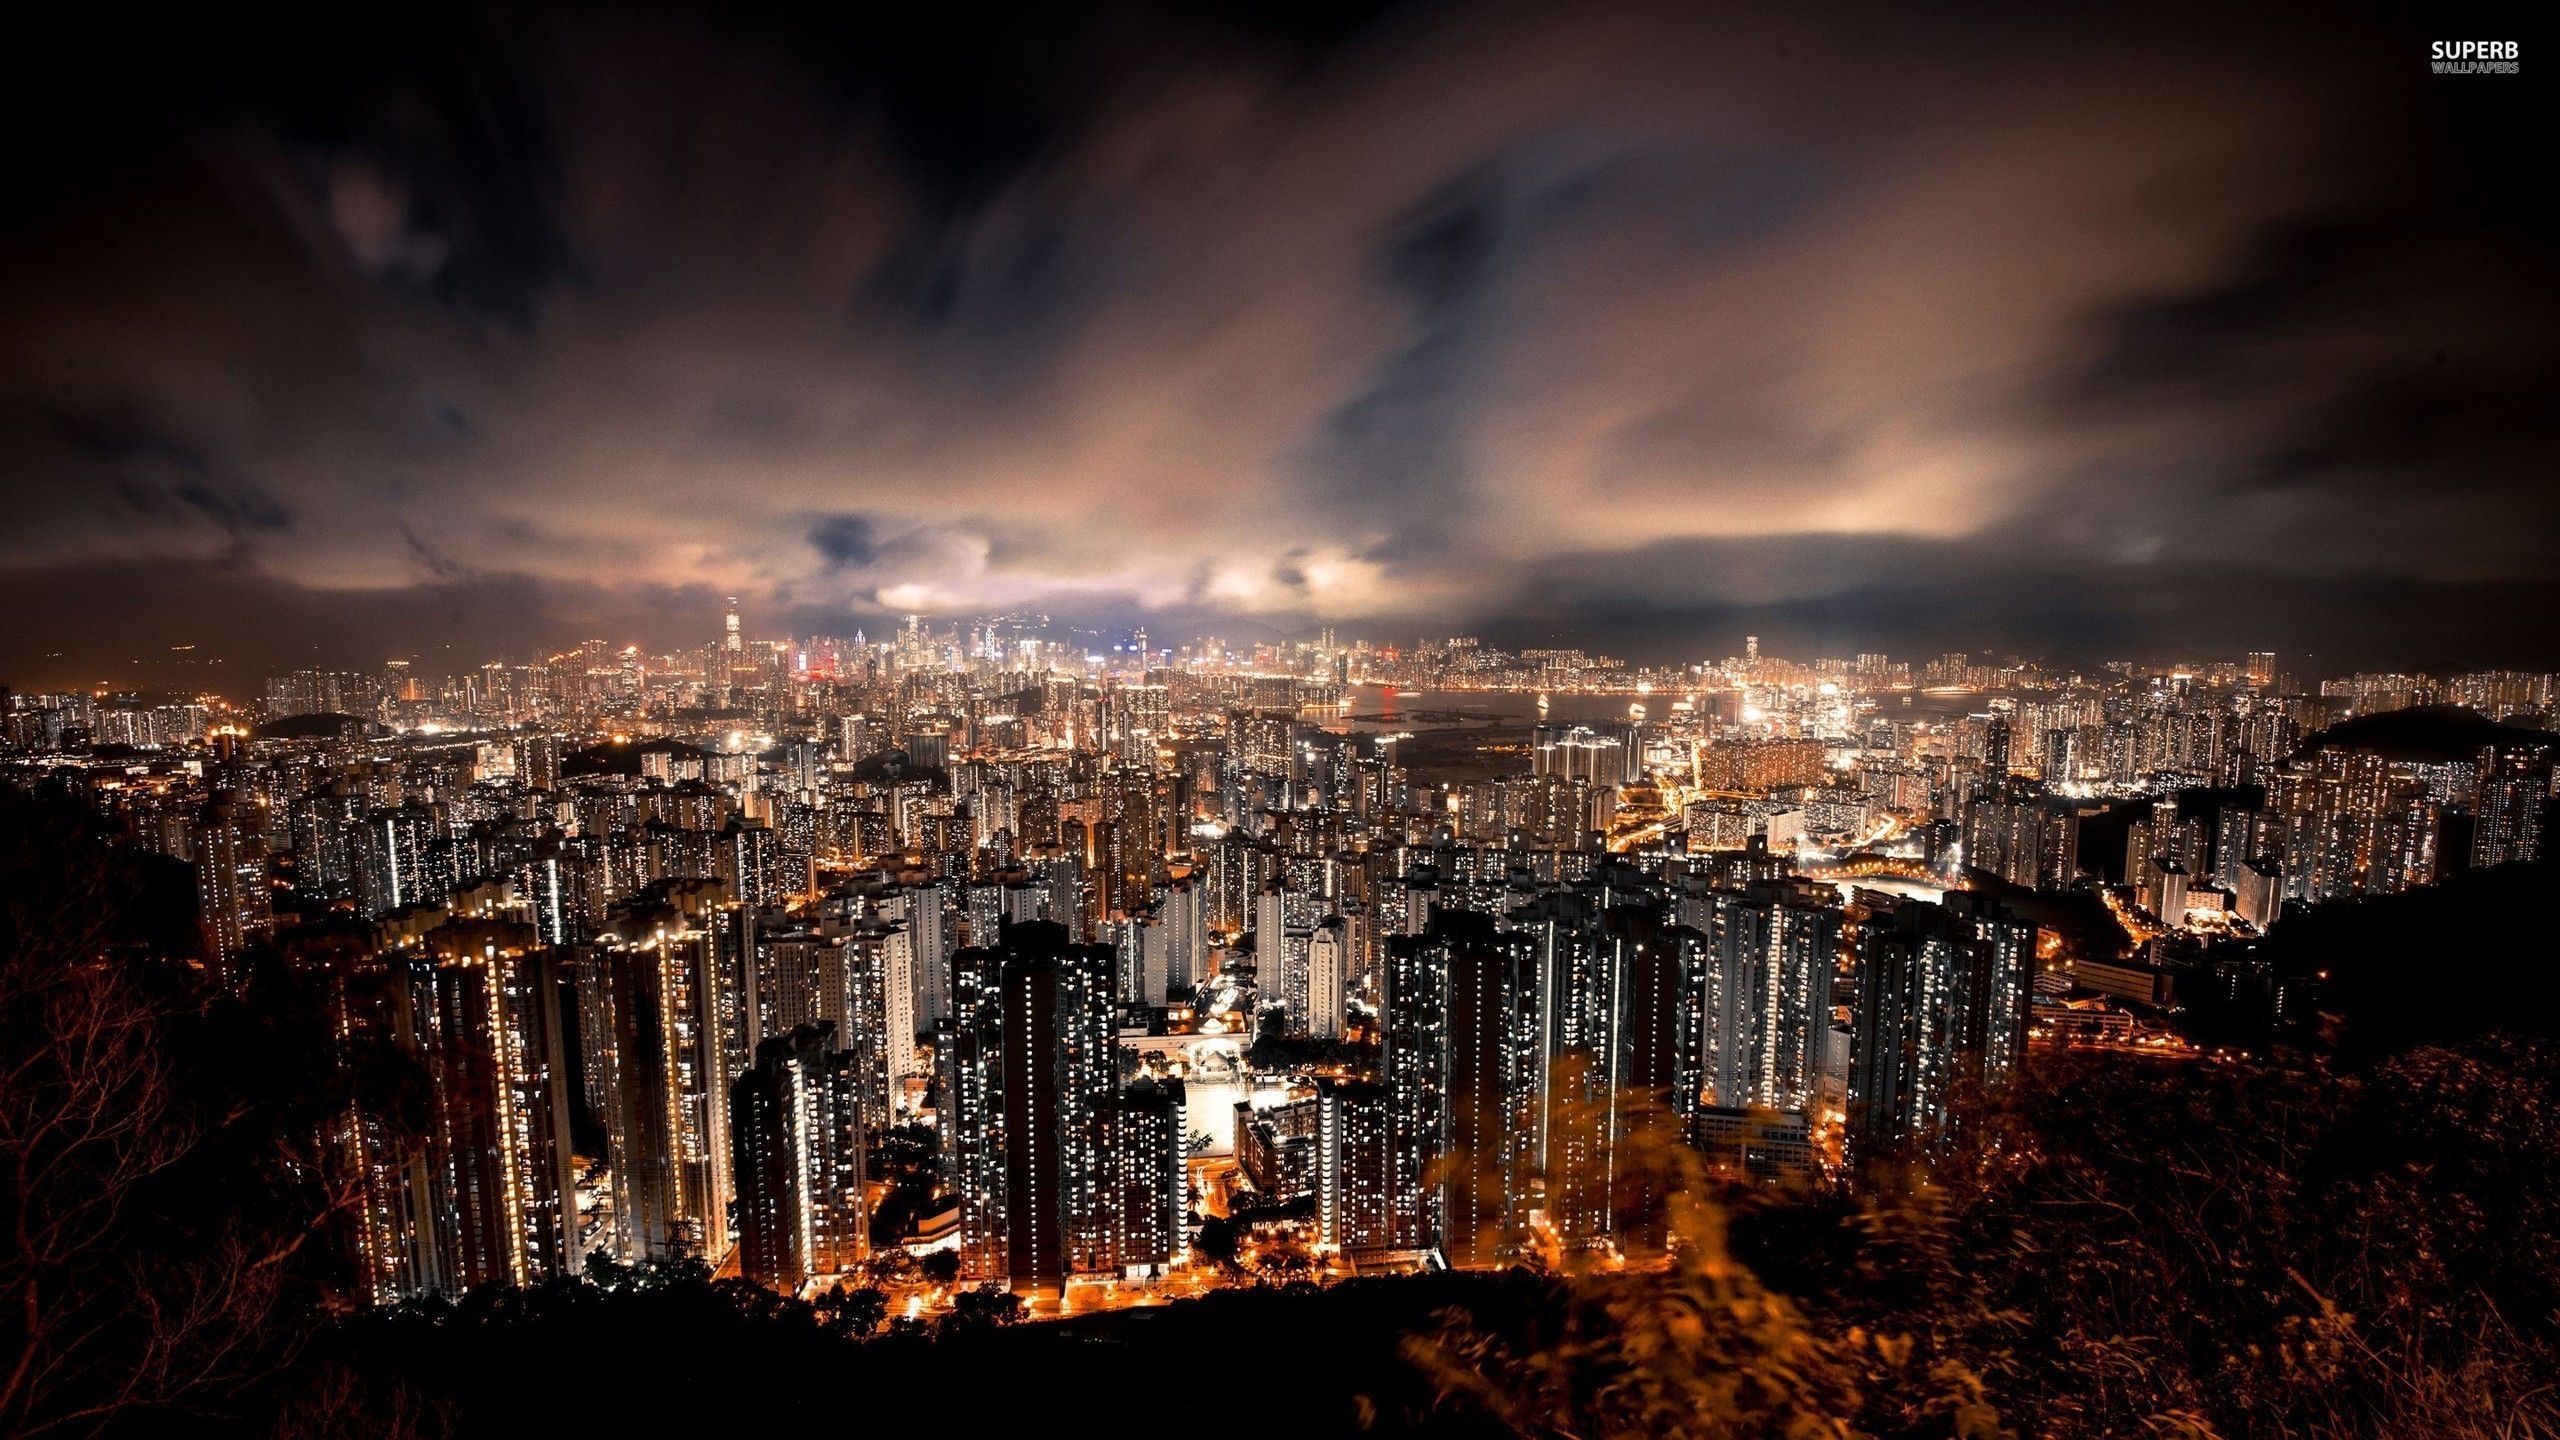 Hong Kong at night wallpaper - World wallpapers - #25828